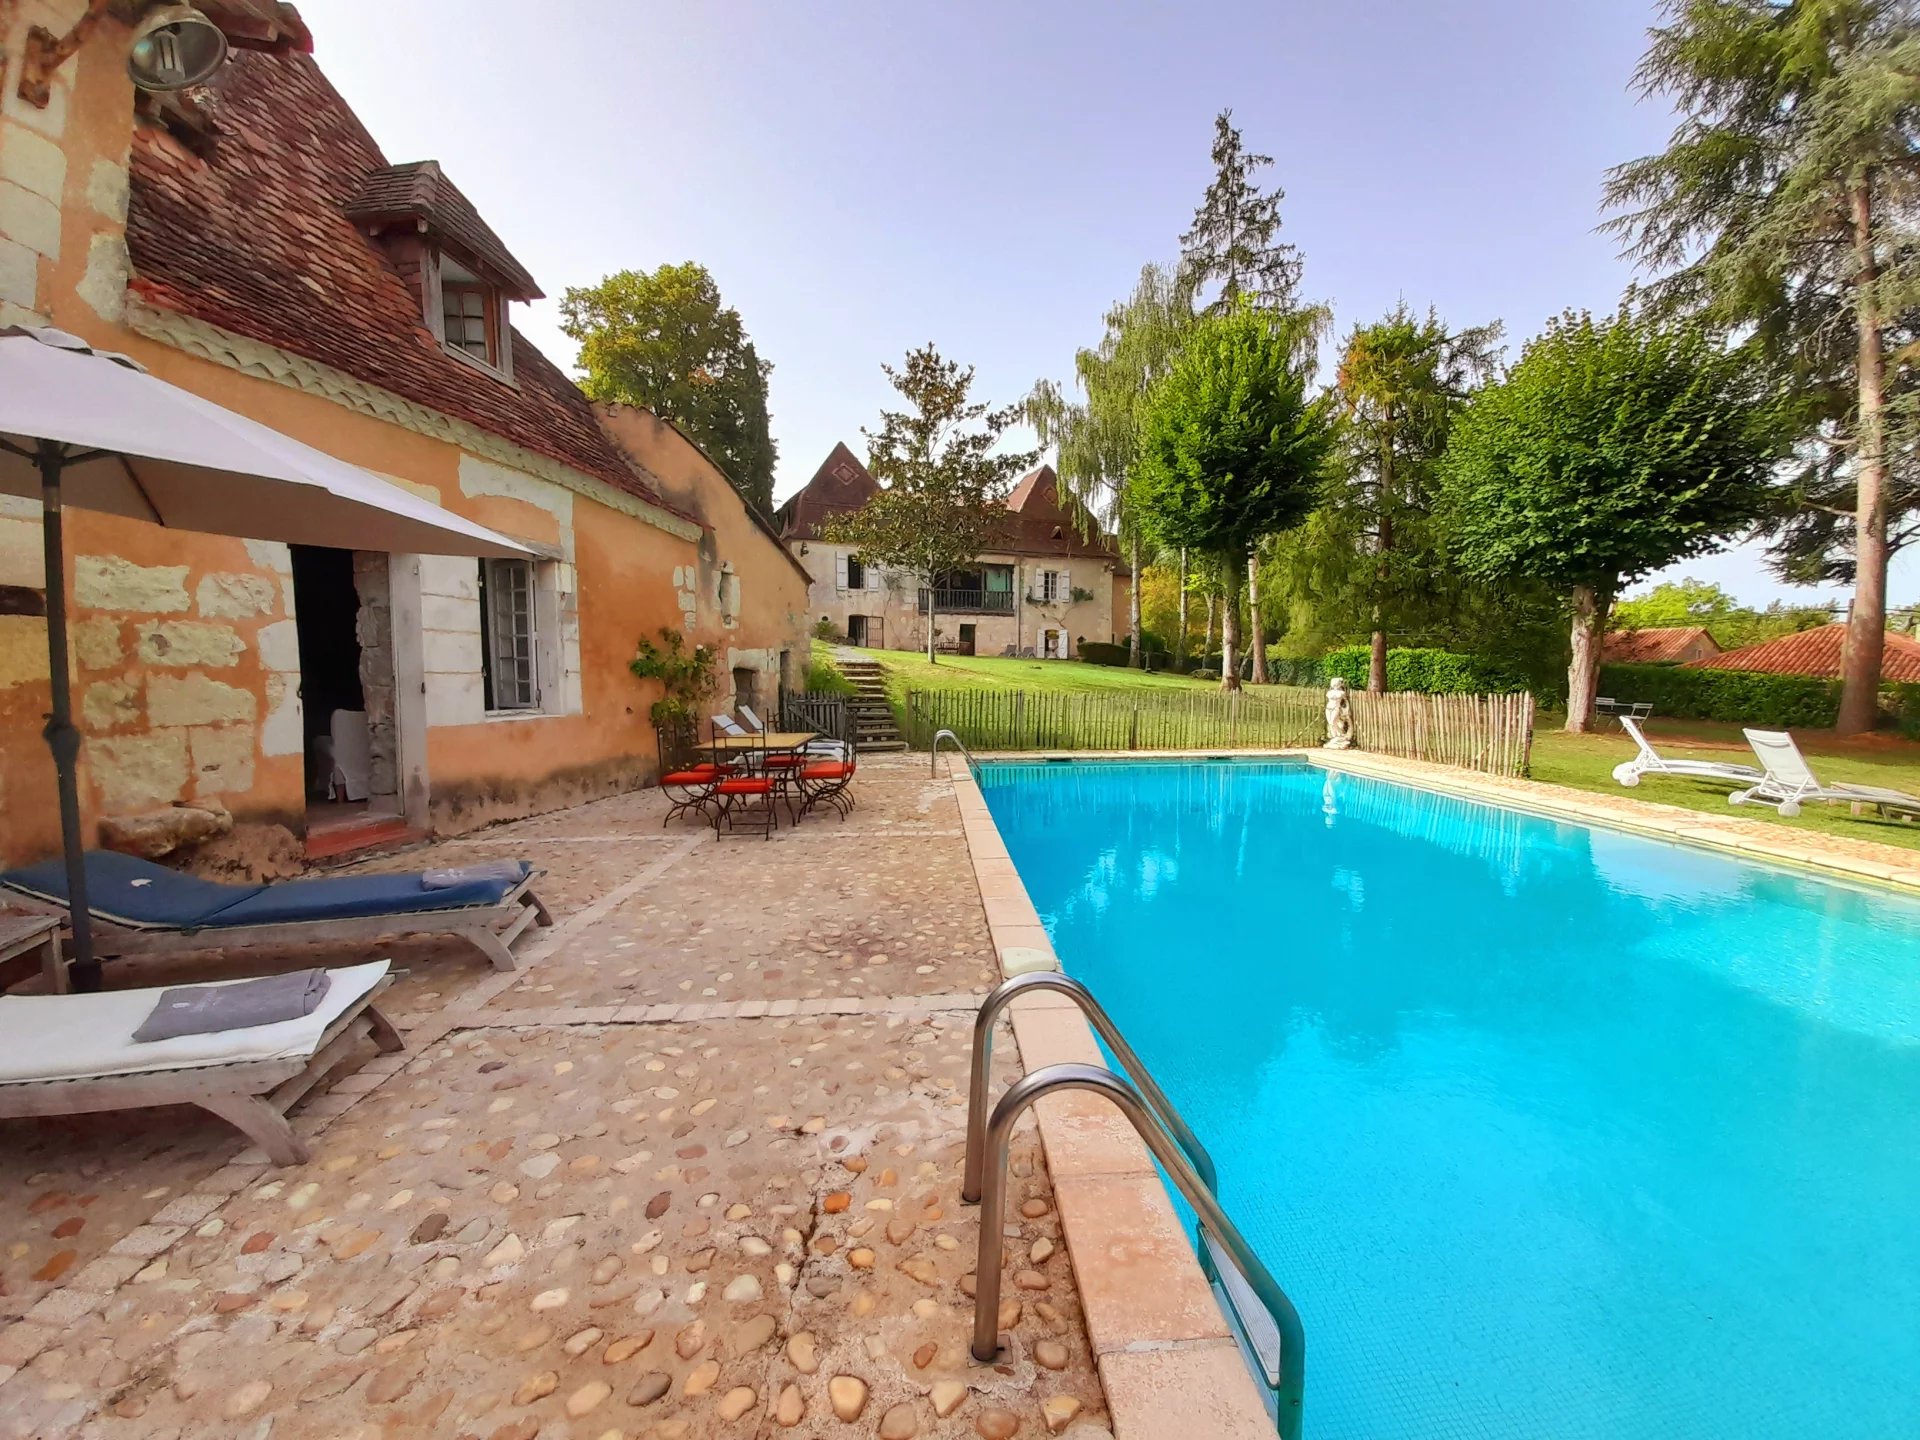 Unique maison de maître with guest house, pool and outbuildings